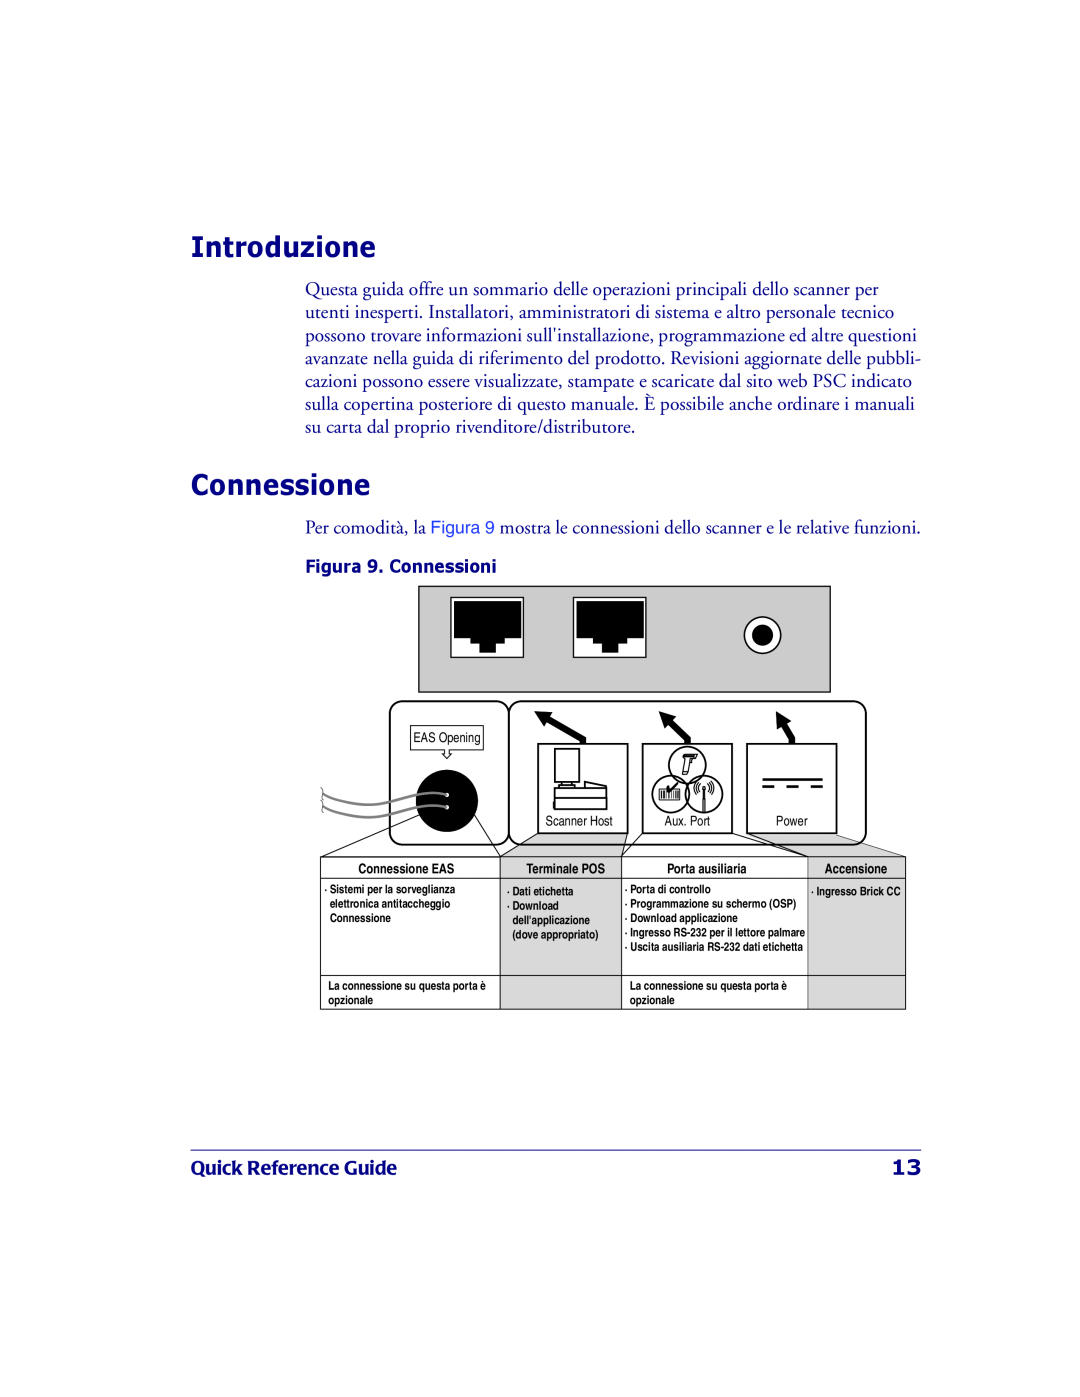 PSC 2200VS manual Introduzione, Connessione, Quick Reference Guide, Figura 9. Connessioni 